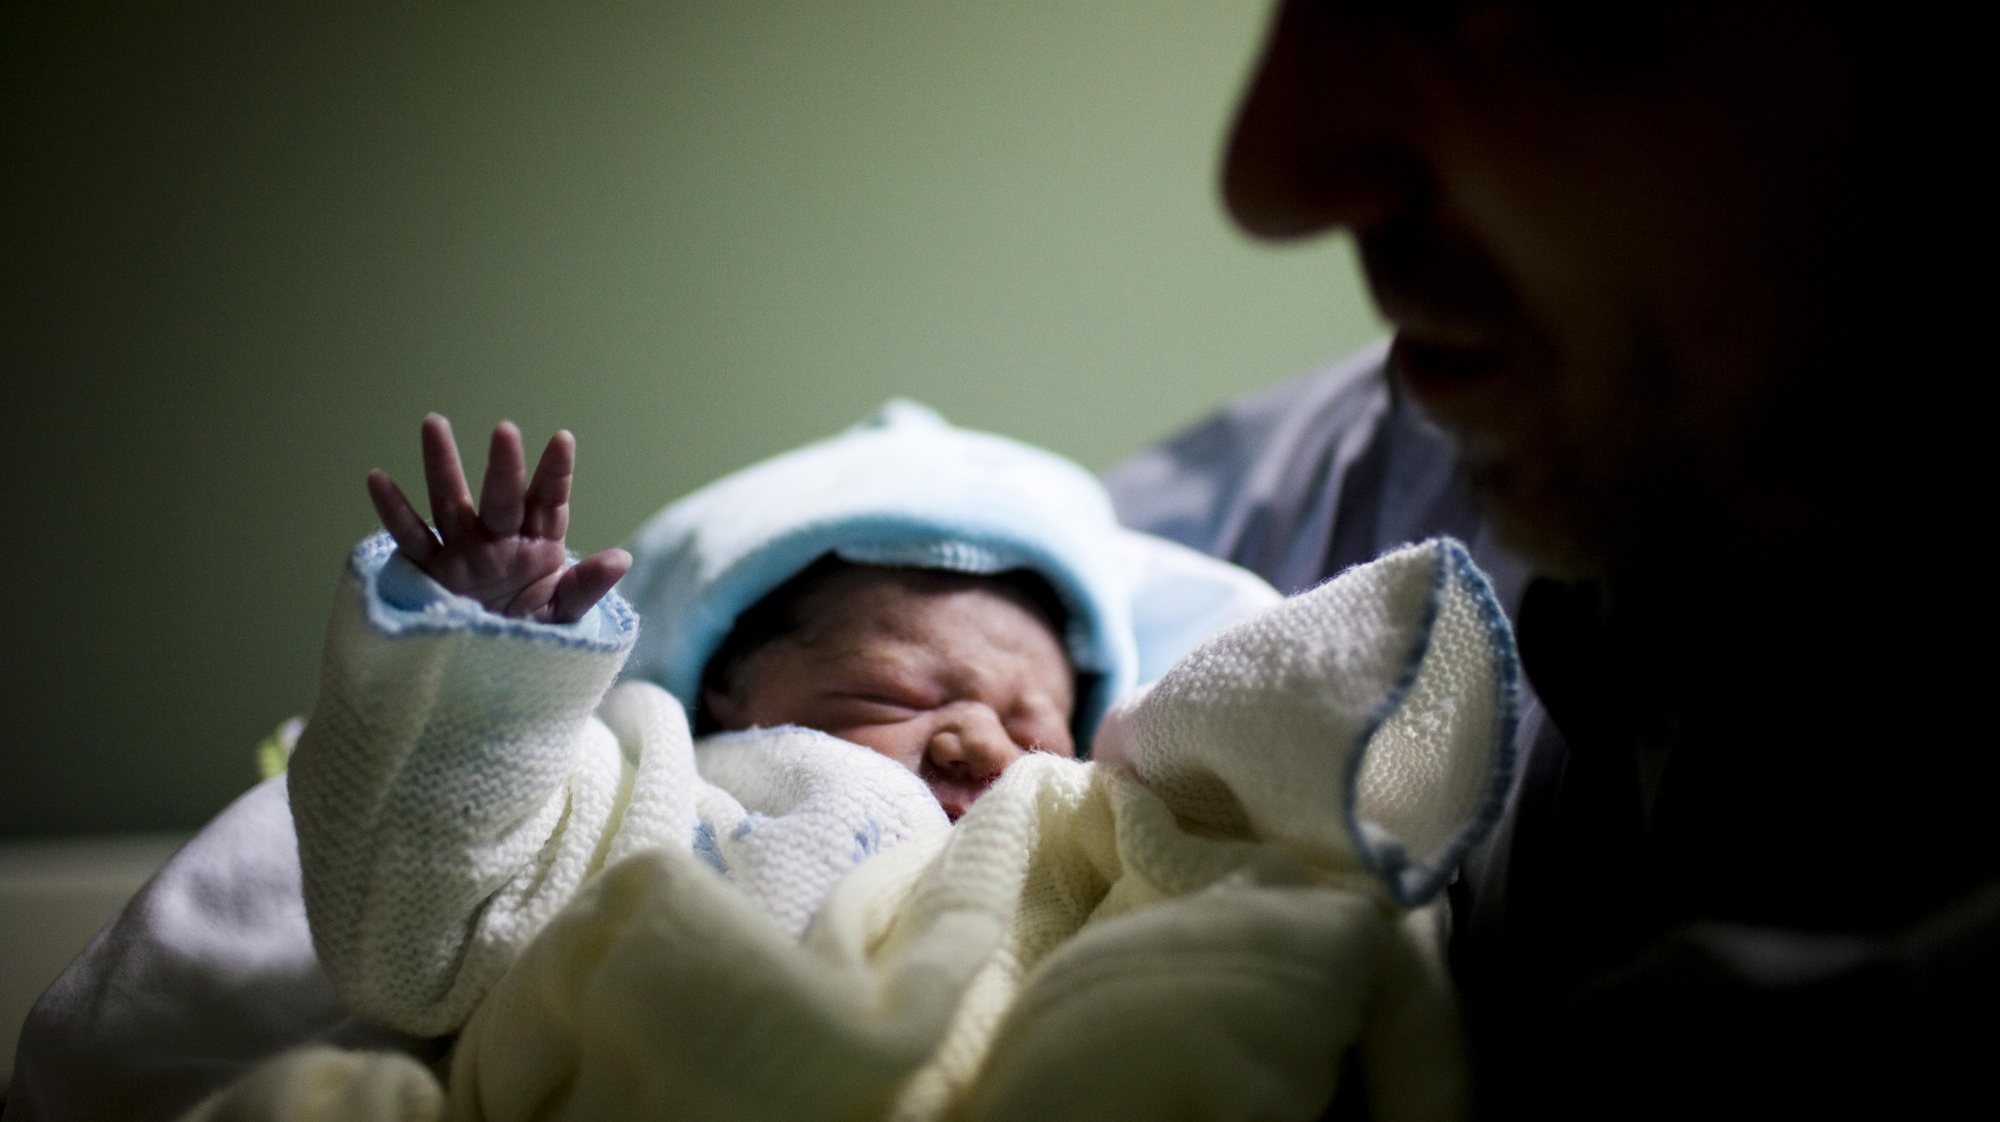 Lusa_Covid-19: Hospital de Aveiro volta a permitir visita do pai a recém-nascidos